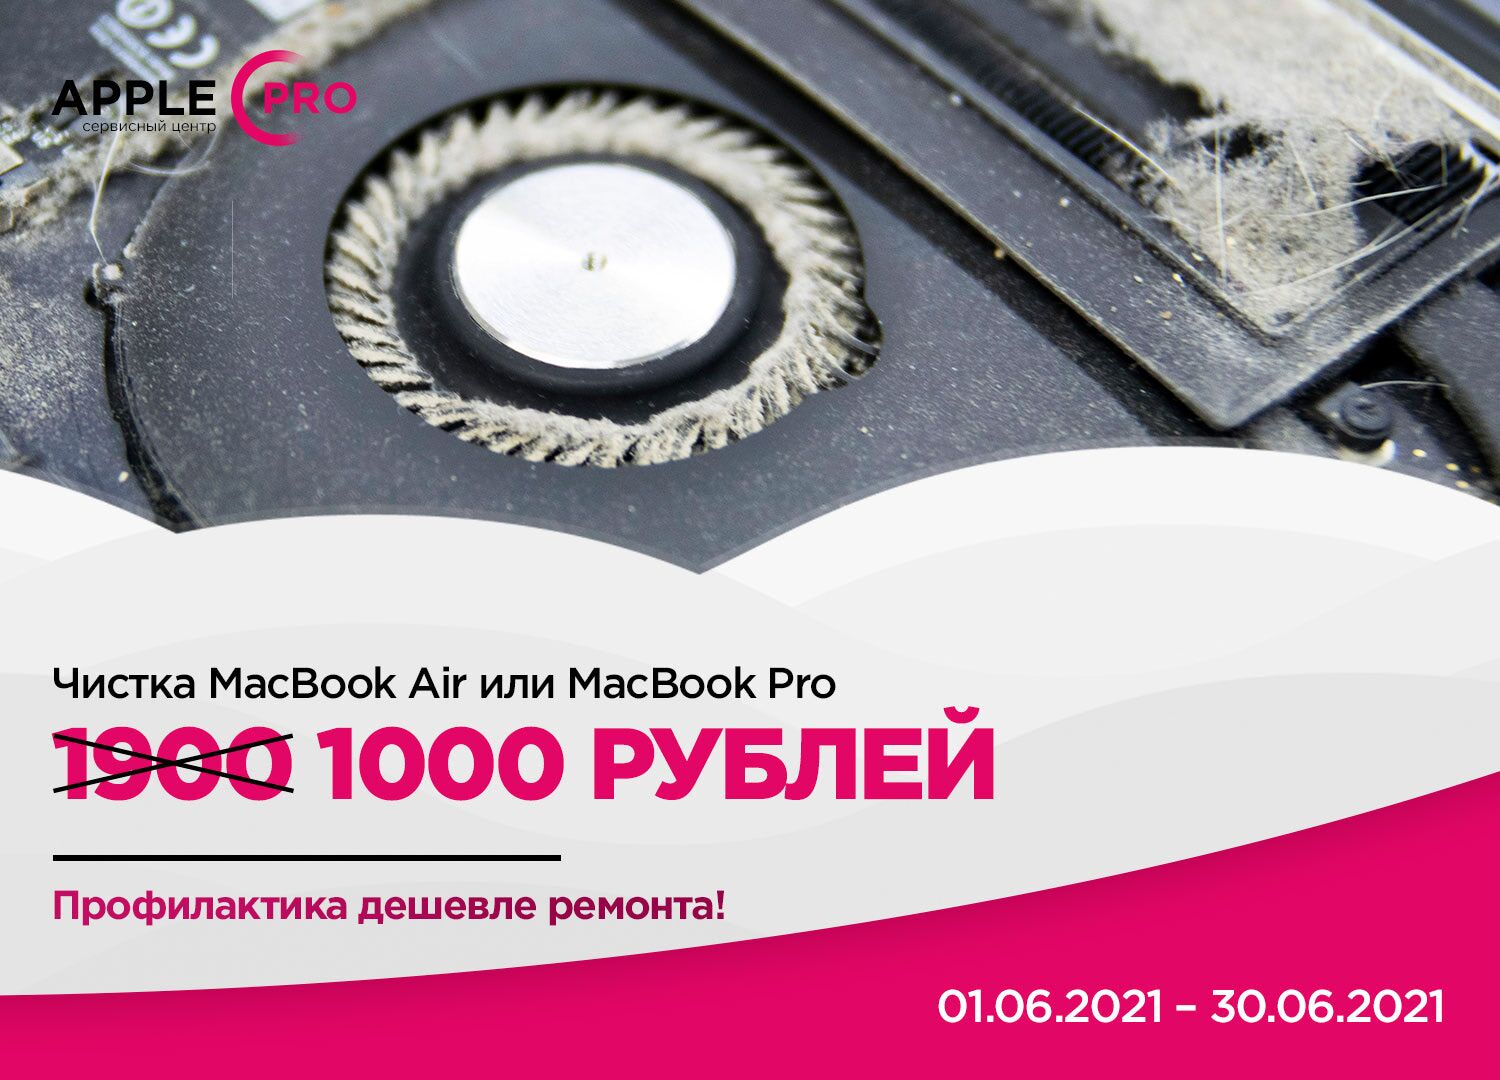 Чистка и профилактика MacBook за 1000 рублей!